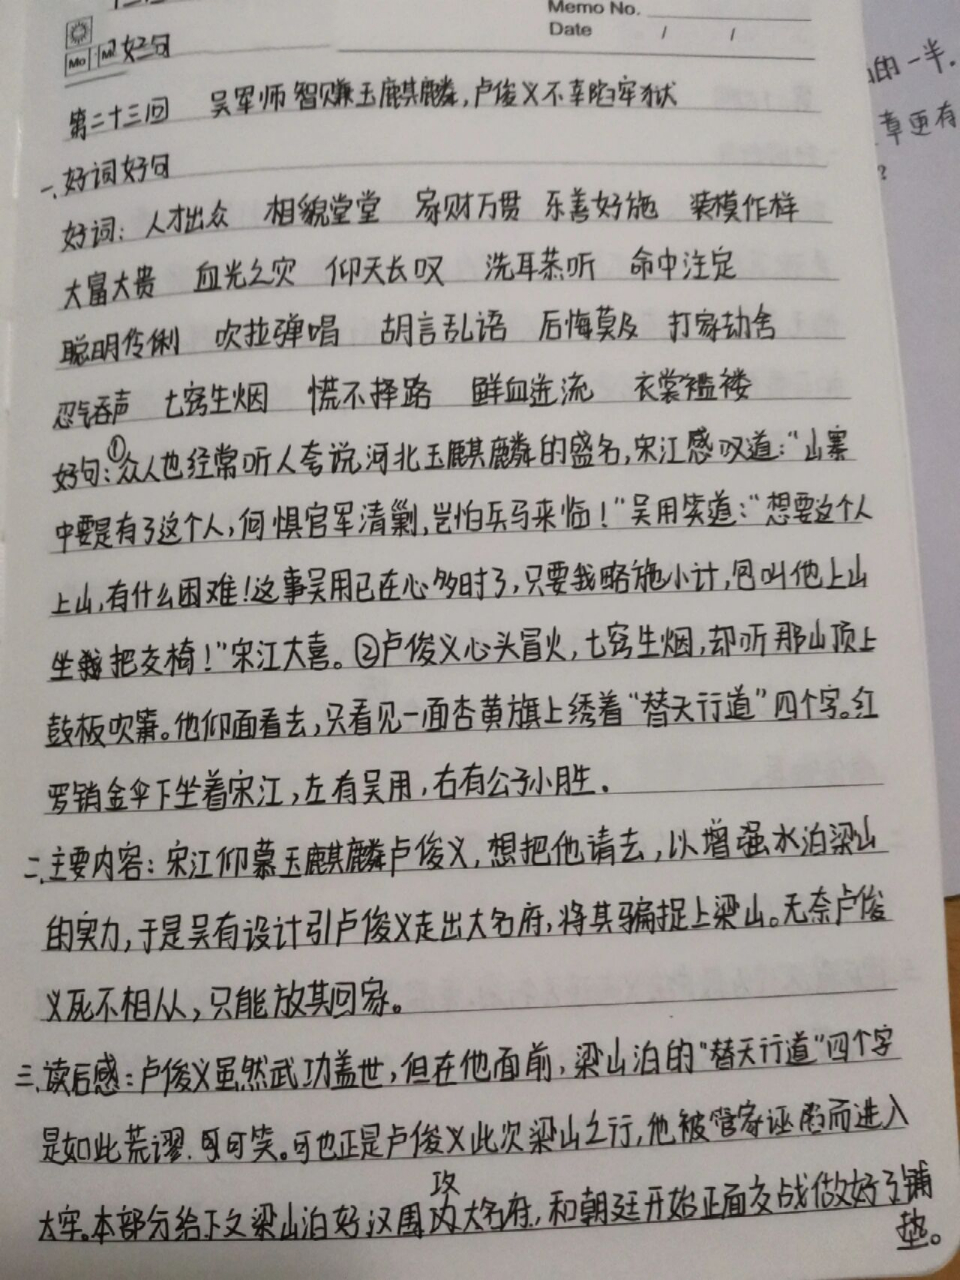 《水浒传》第二十三回读书笔记 《水浒传》第二十三回—吴军师智取玉